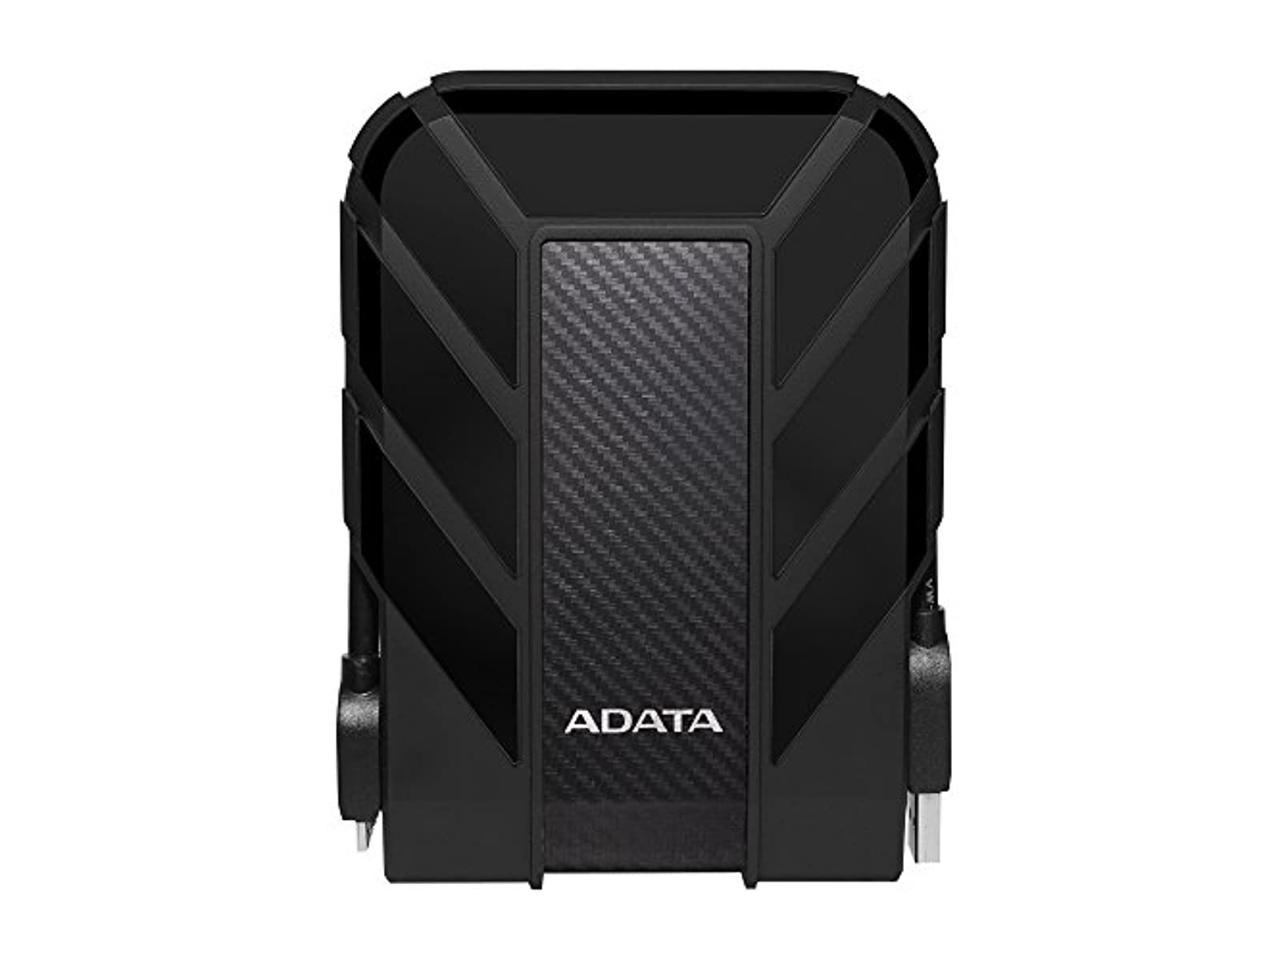 AHD710P-4TU31-CBK Black ADATA HD710 Pro 4TB USB 3.1 IP68 Waterproof/Shockproof/Dustproof Ruggedized External Hard Drive 